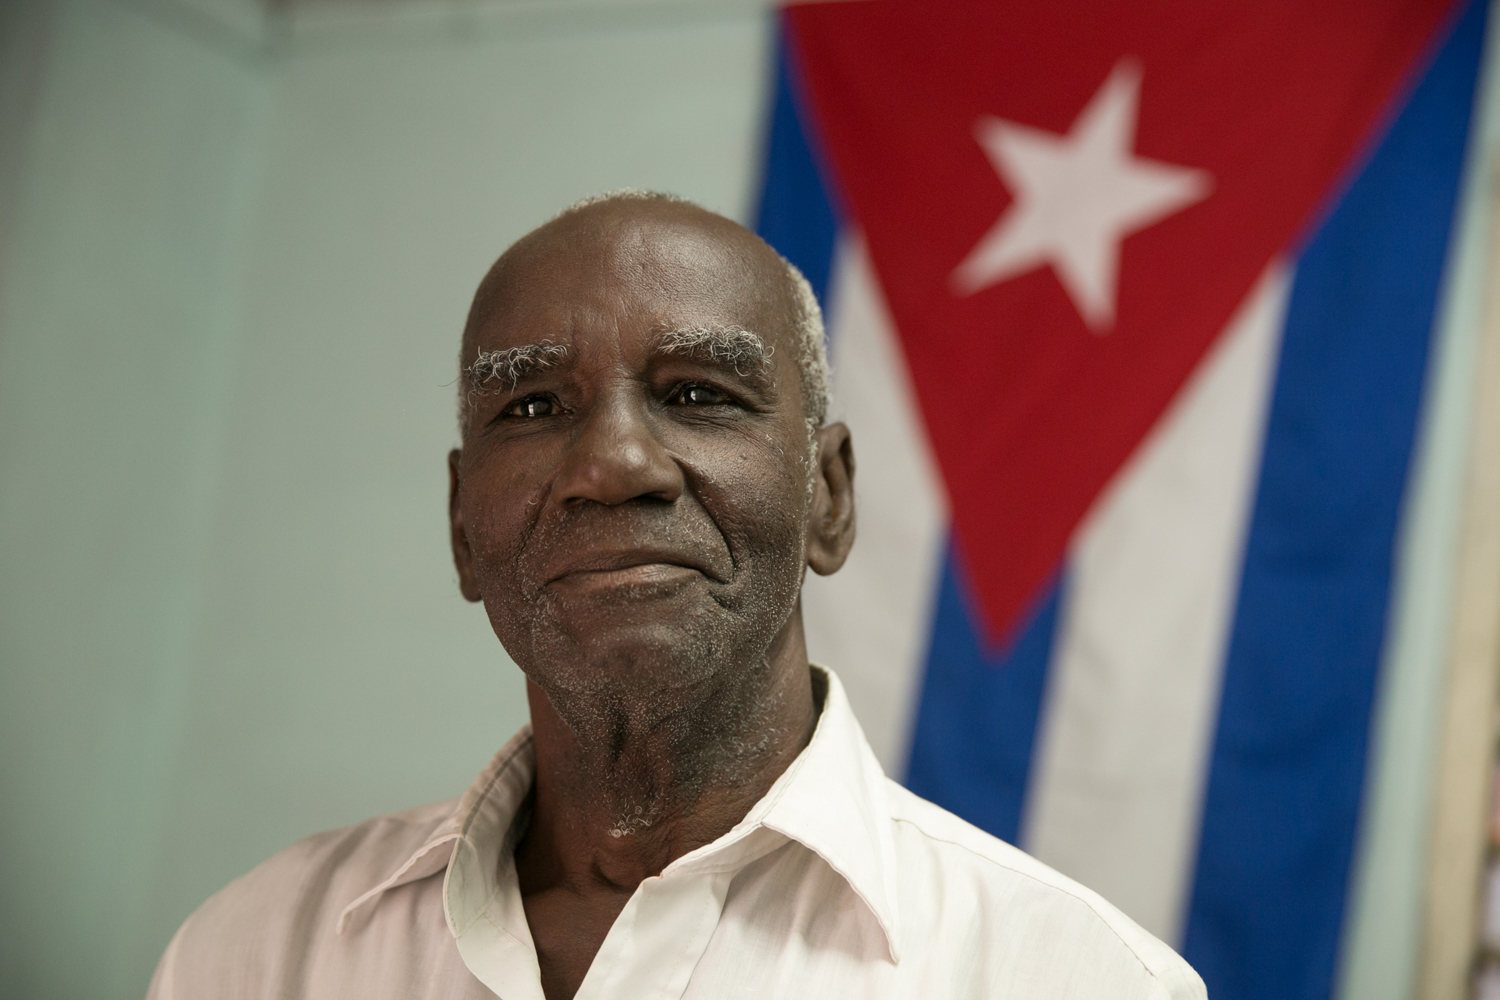 001_Cuba-5698.jpg